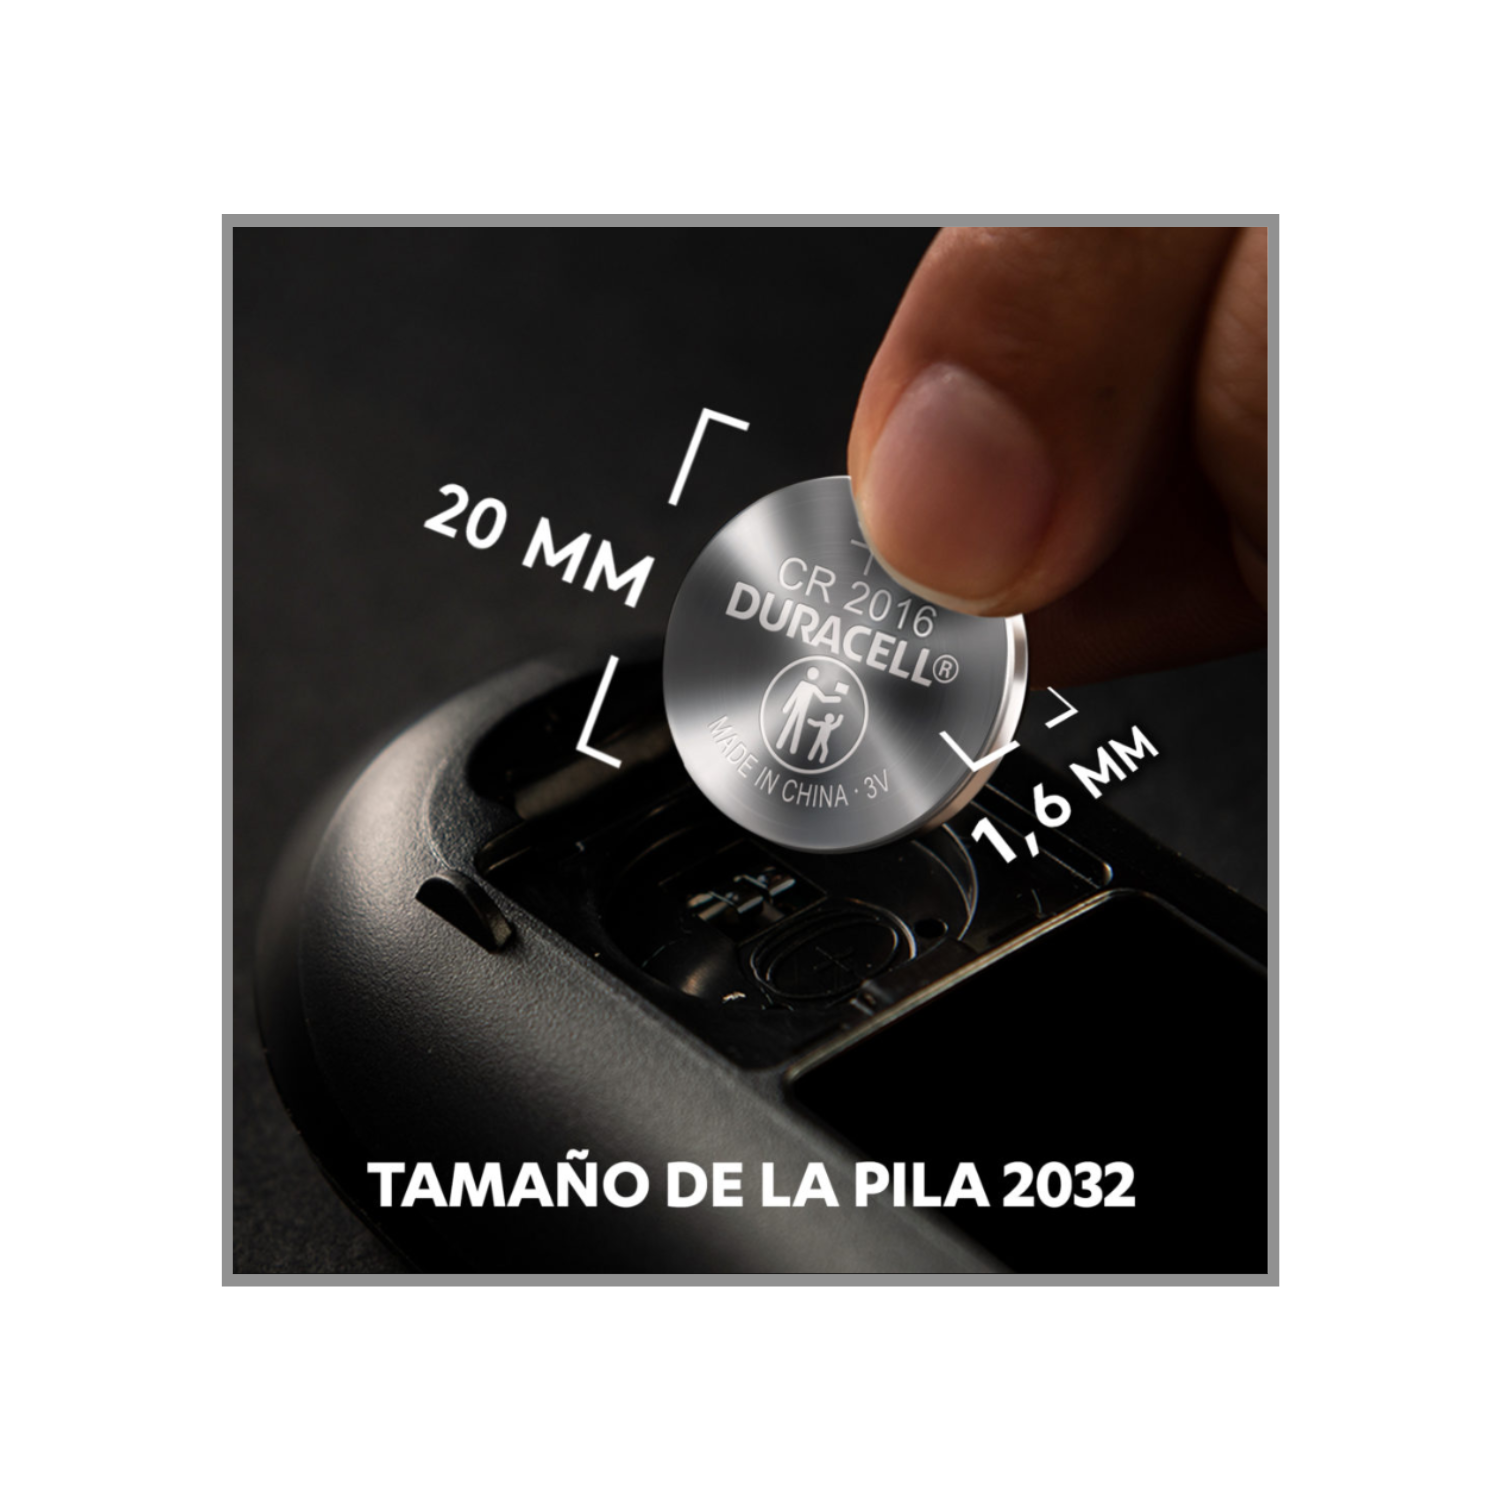 Pilas Duracell Boton Para Afinador de Guitarra CR2032 – The